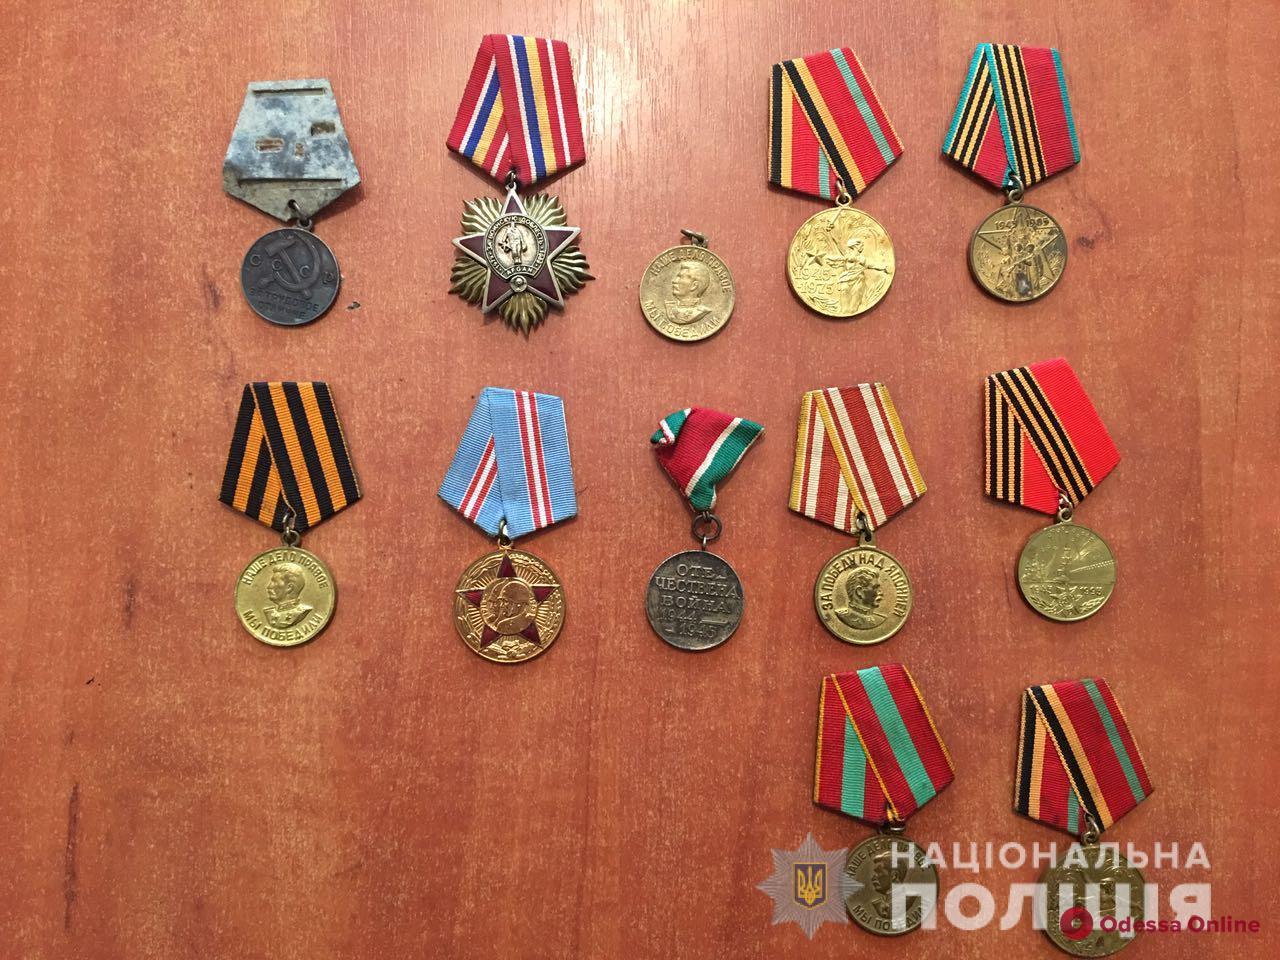 У разбойника из Белгорода-Днестровского обнаружили склад чужих вещей — полиция ищет хозяев